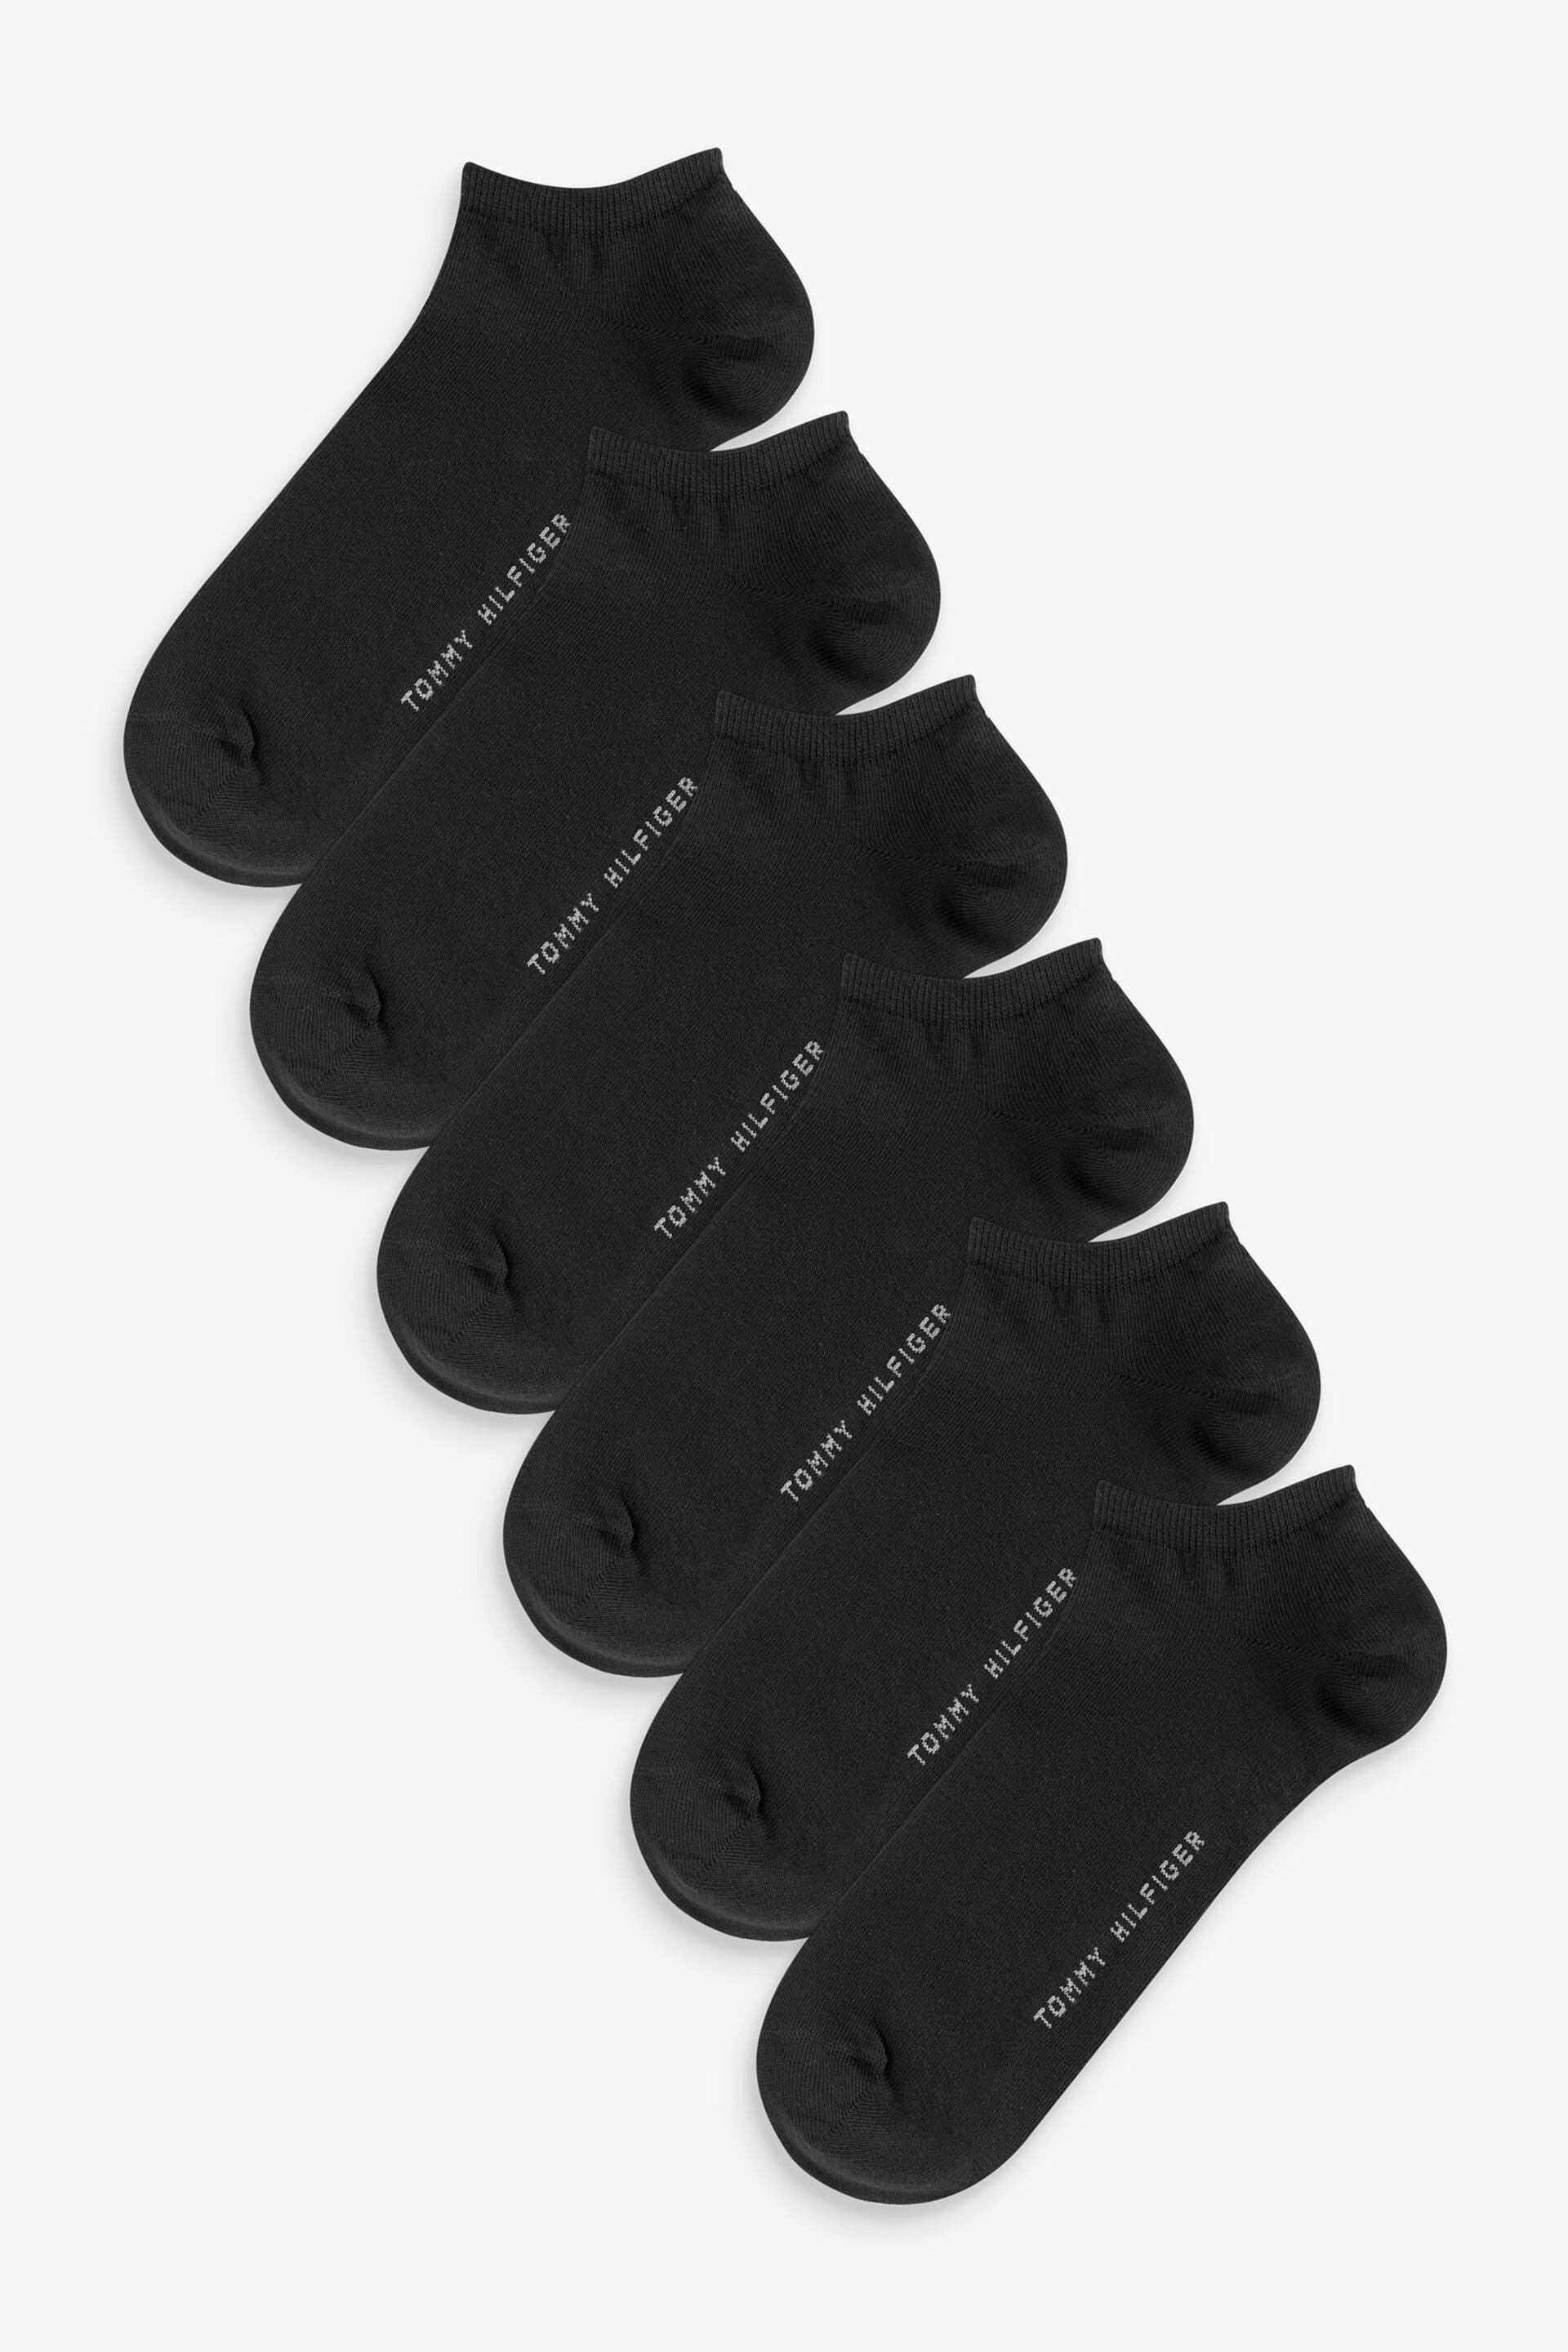 Tommy Hilfiger Black Mens Sneaker Socks 6 Pack - Image 1 of 2